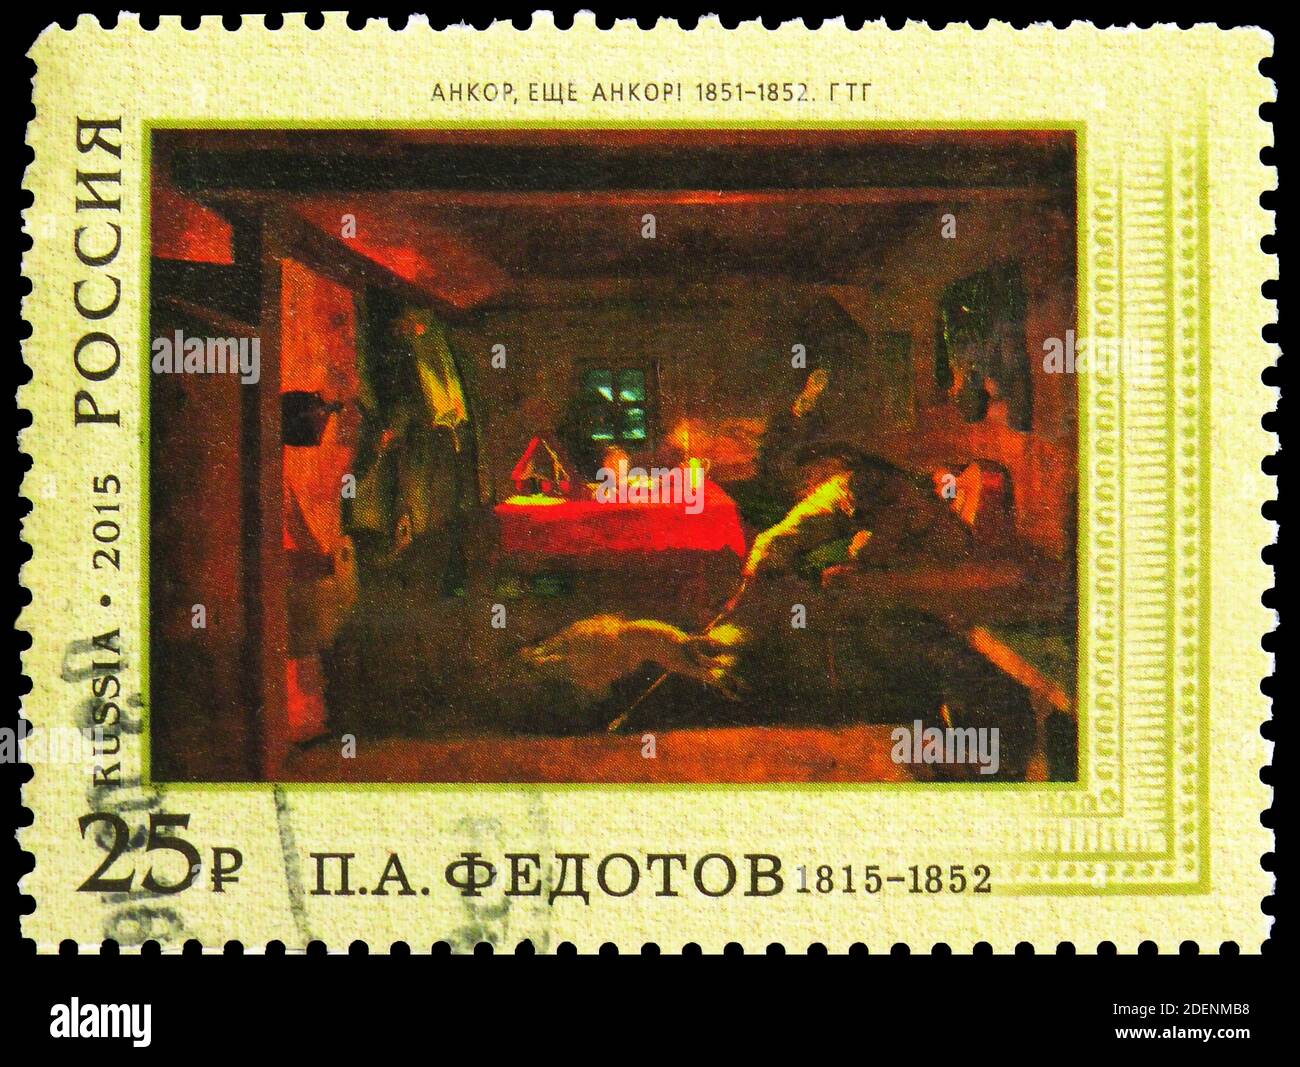 MOSCOU, RUSSIE - 5 MAI 2020: Timbre-poste imprimé en Russie montre Pavel A. Fedotov, encore, encore. 1851-1852, série du 200e anniversaire de naissance, vers Banque D'Images